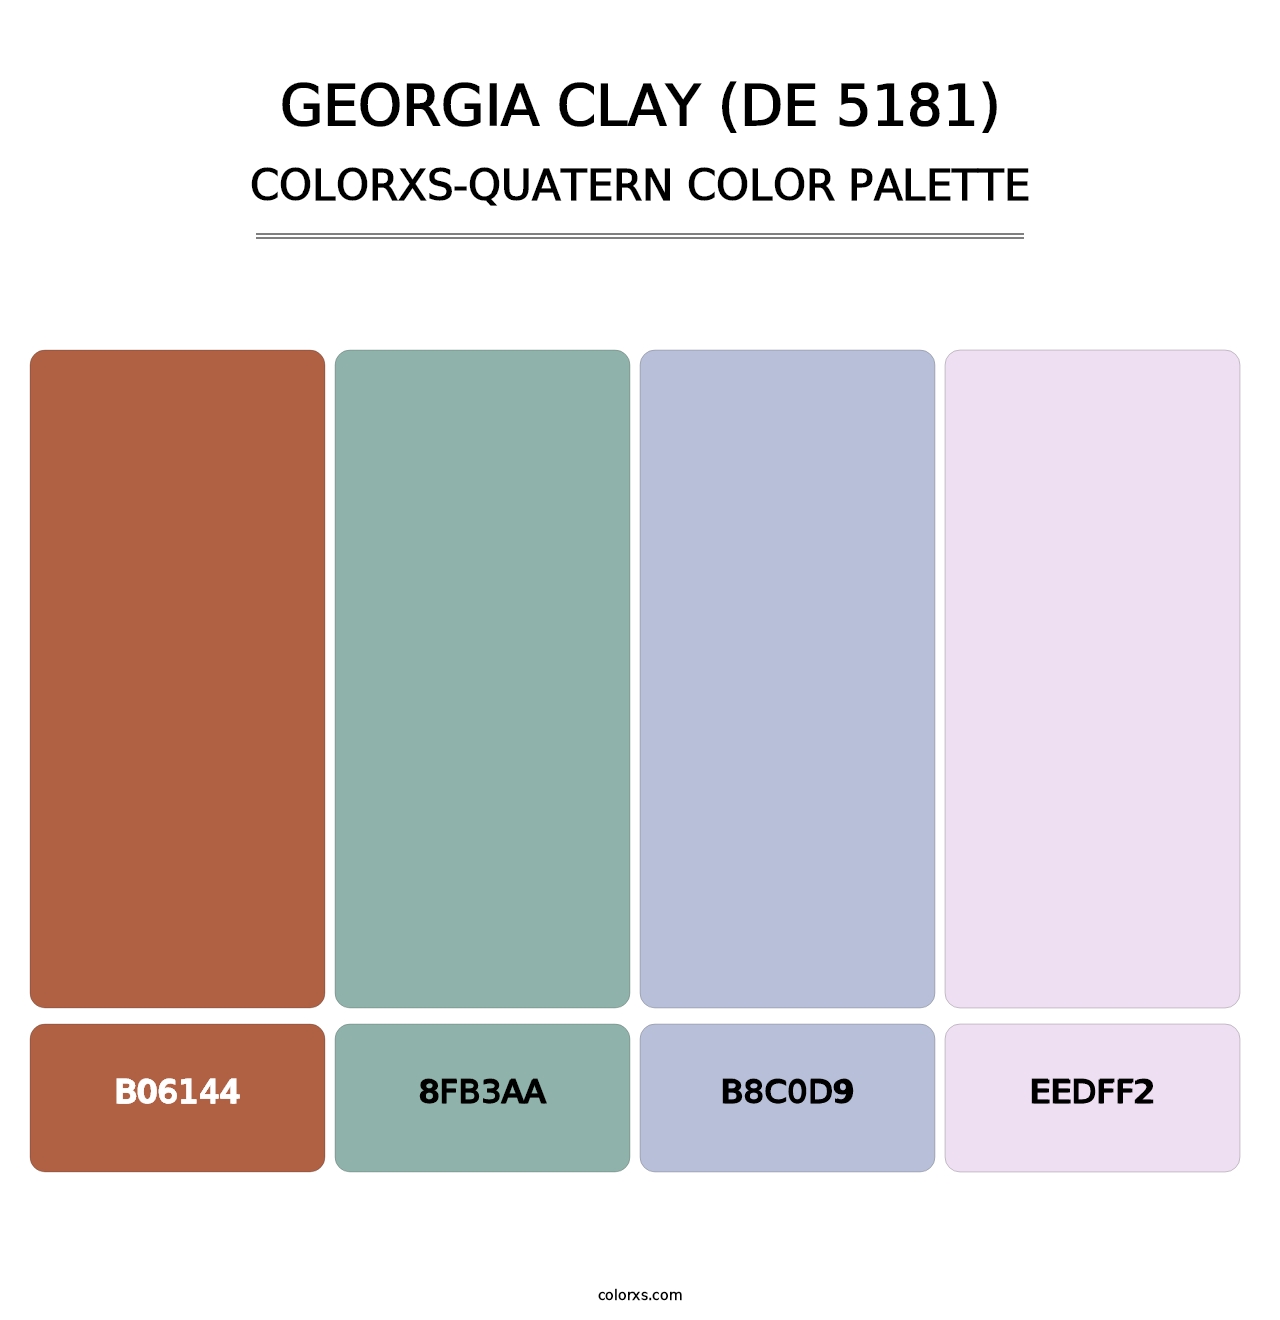 Georgia Clay (DE 5181) - Colorxs Quatern Palette